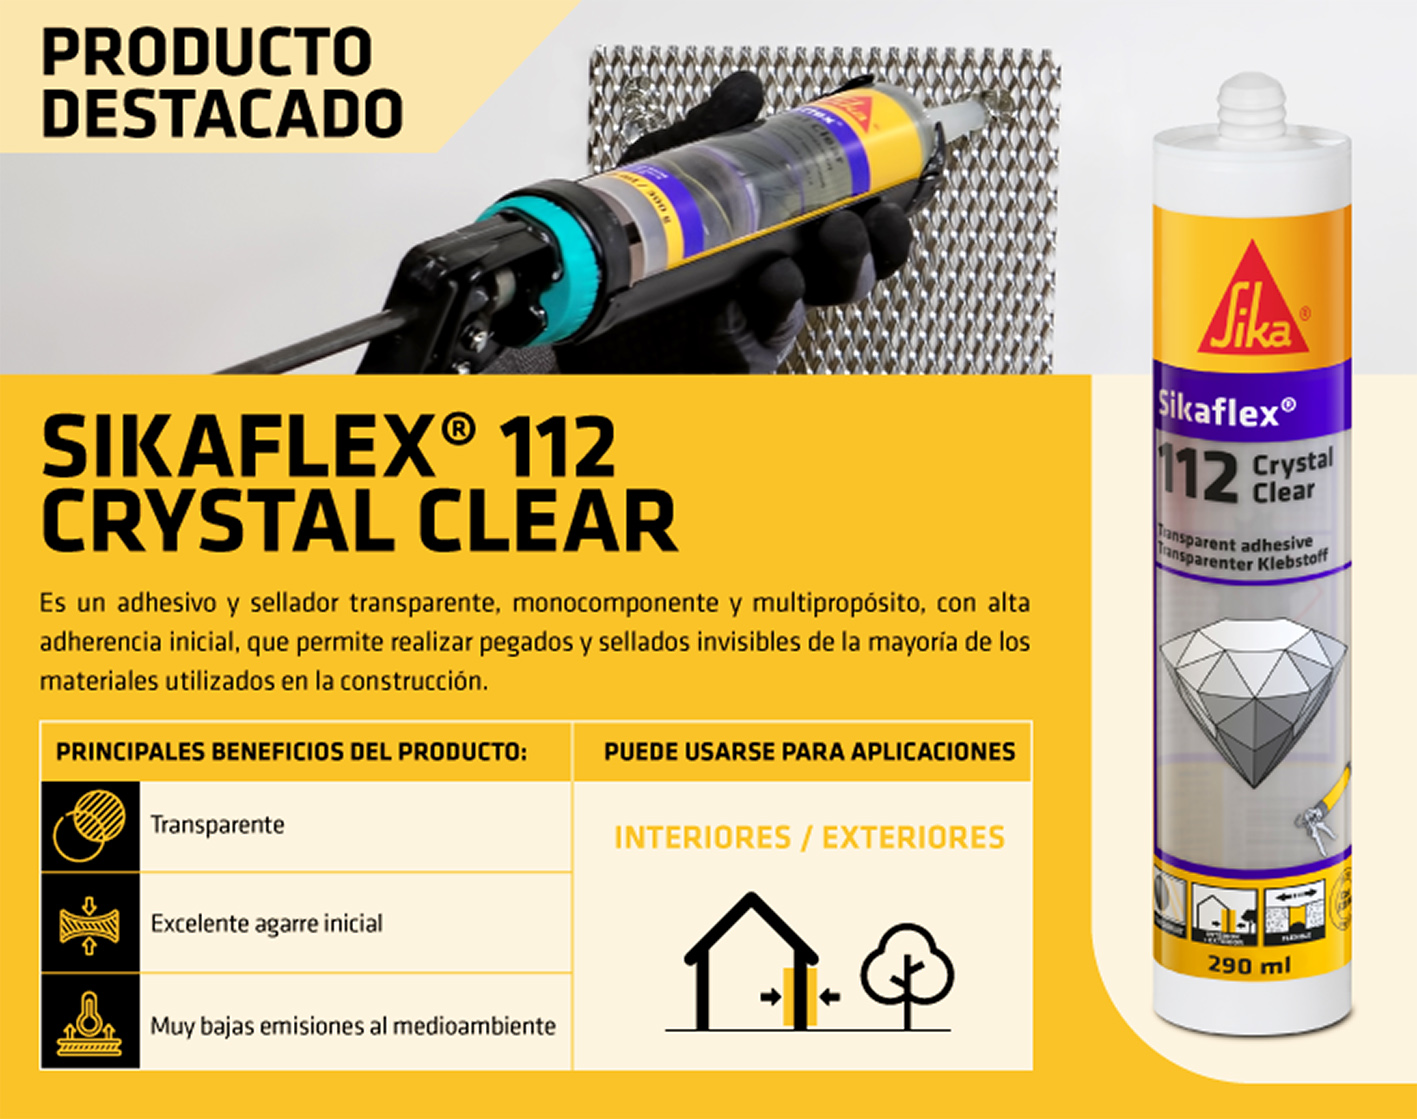 SIKAFLEX® 112 Crystal Clear